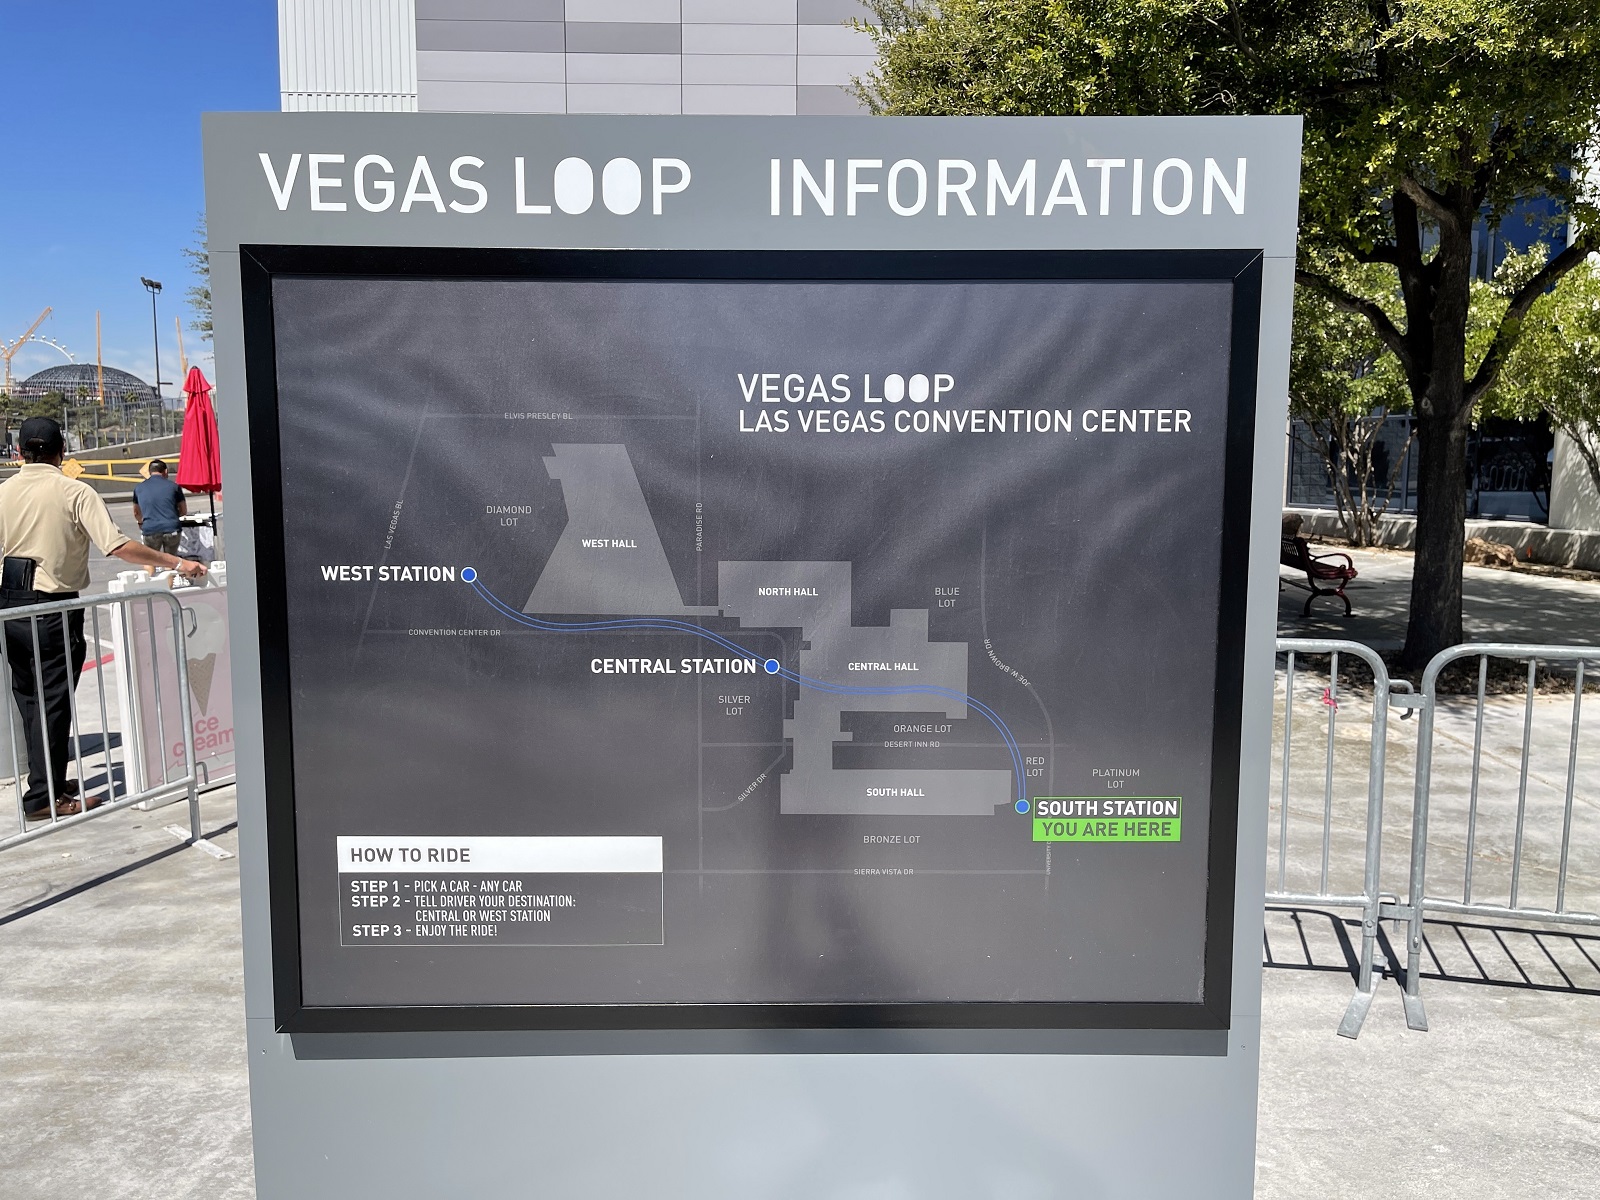 In the (Vegas) loop